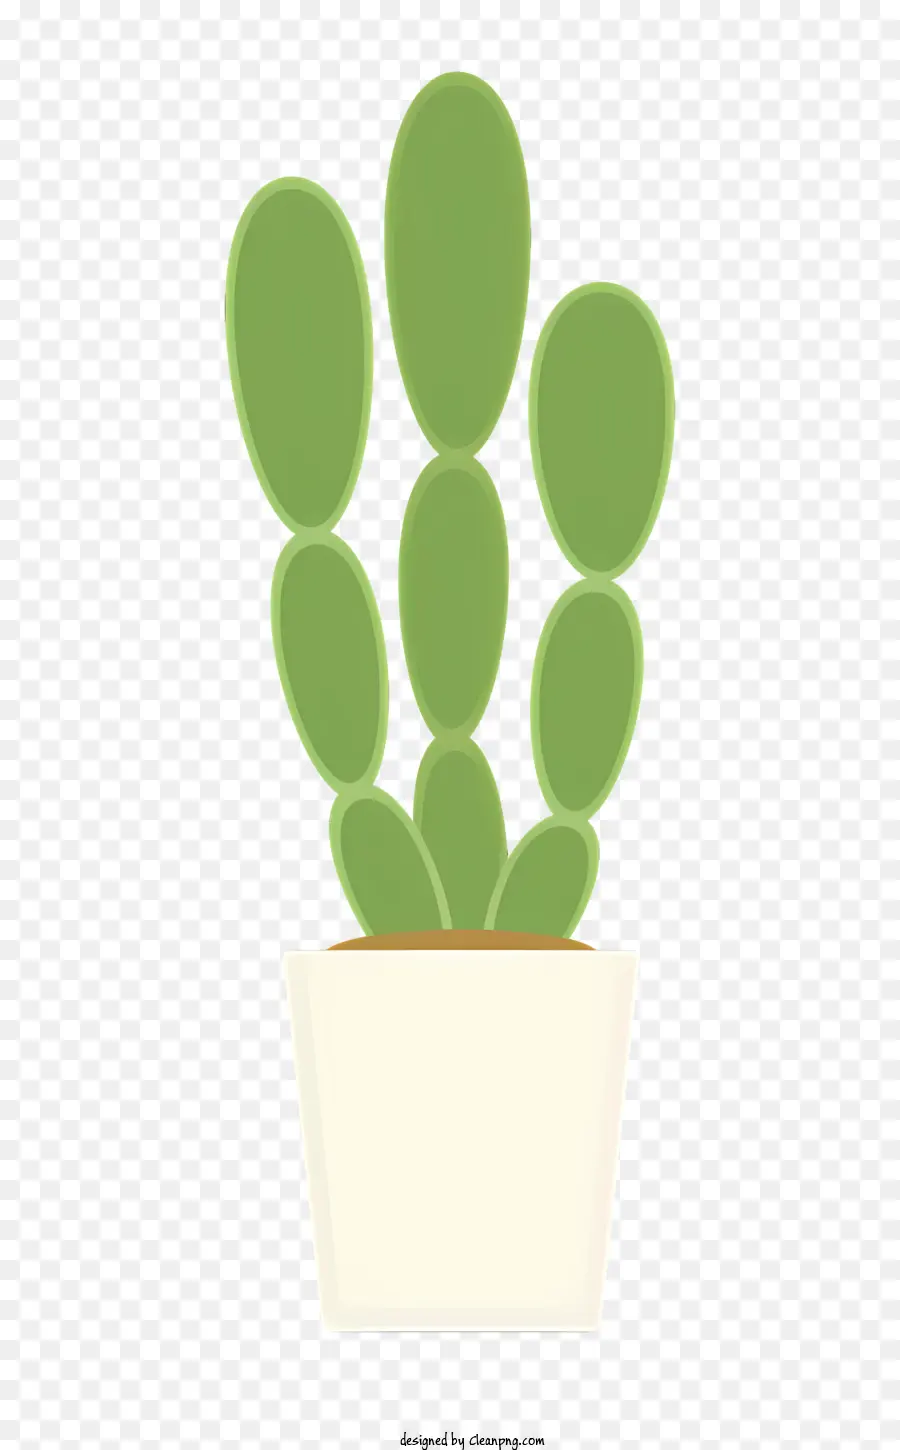 Icon Topf Kaktuspflanze weißer Keramik -Topf runde grüne Blätter kleine braune Spikes - Topfkaktus mit grünen Blättern und Spikes